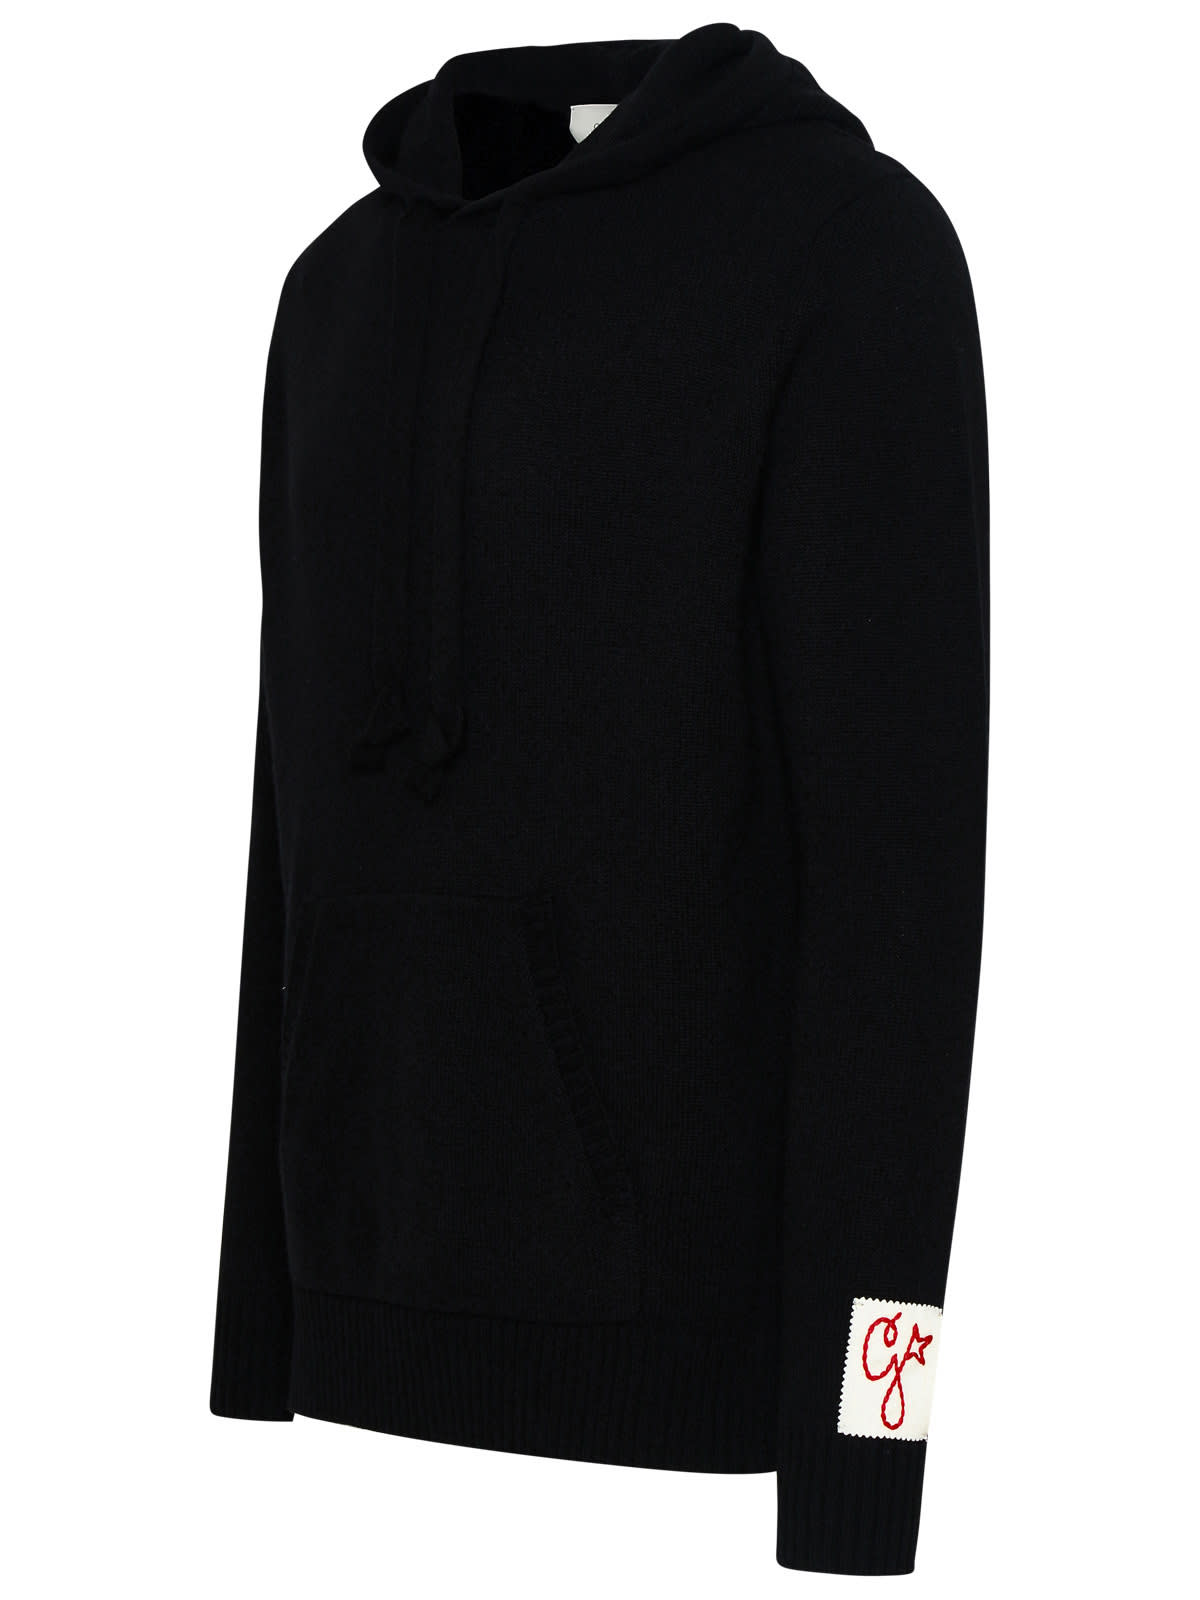 Shop Golden Goose Sweater In Black Virgin Wool